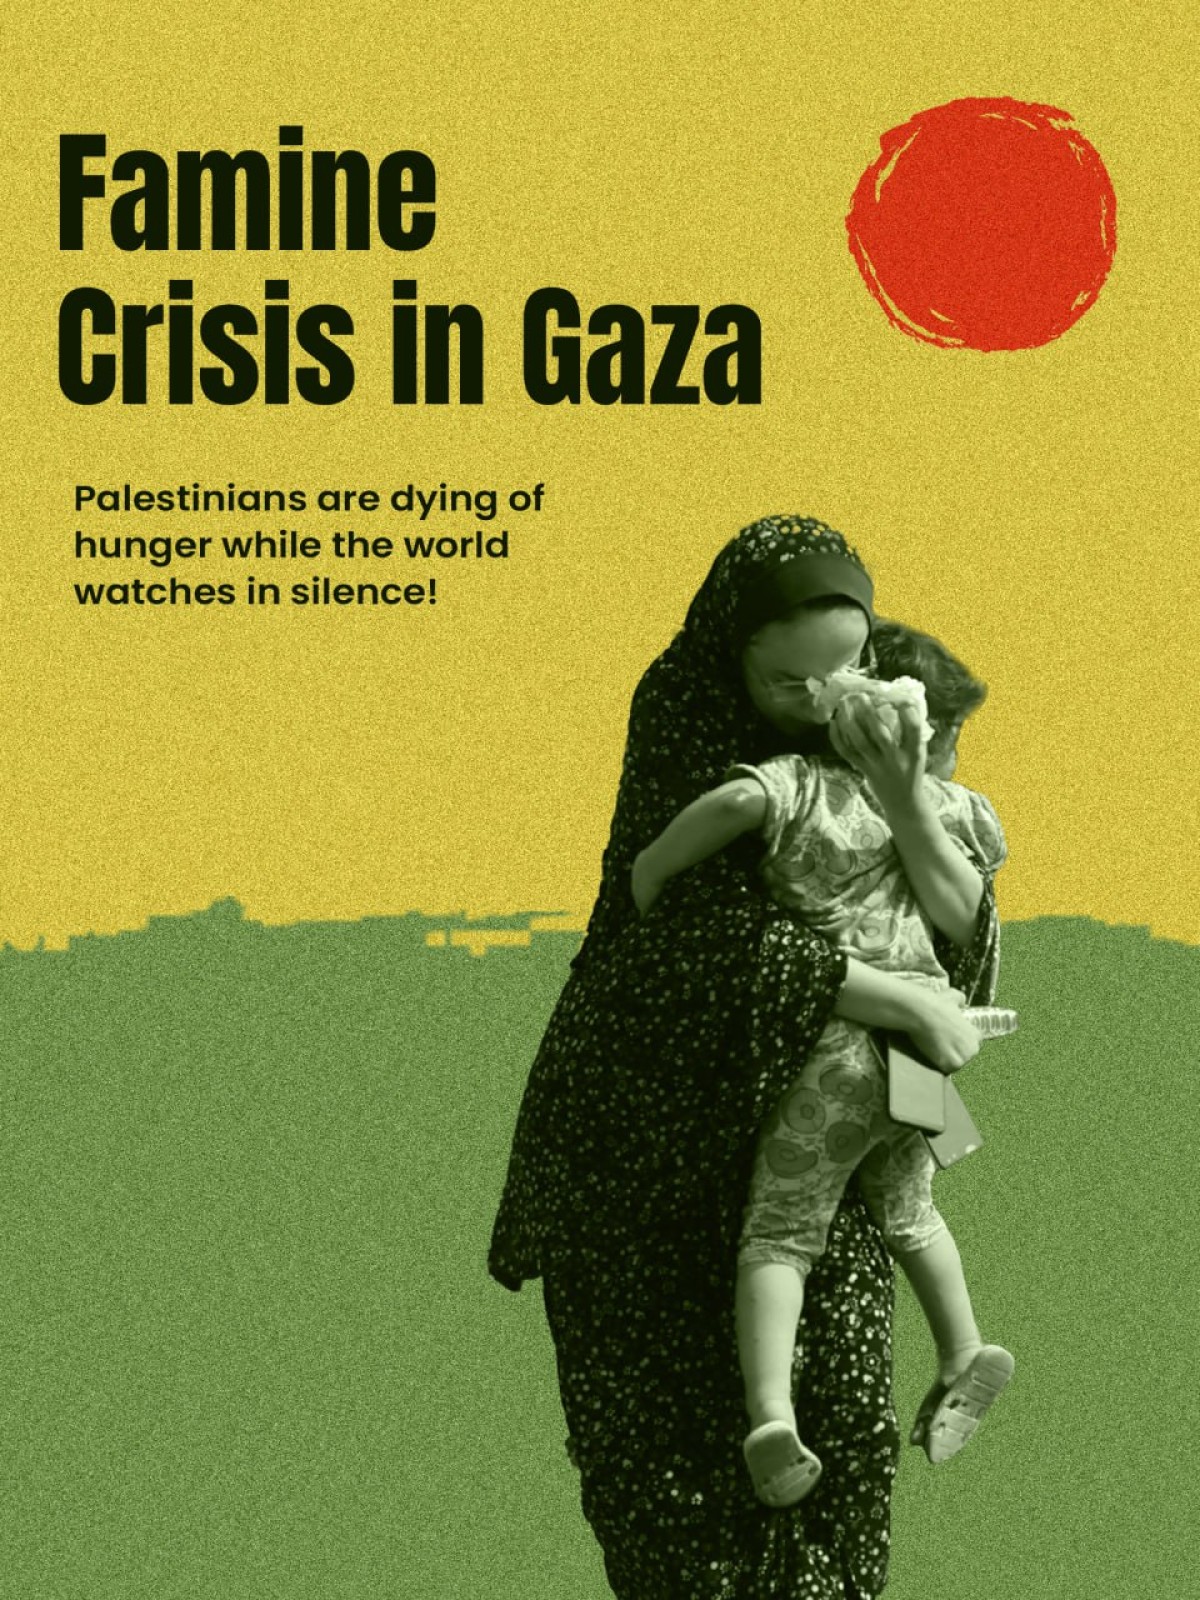 Famine Crisis in Gaza 2